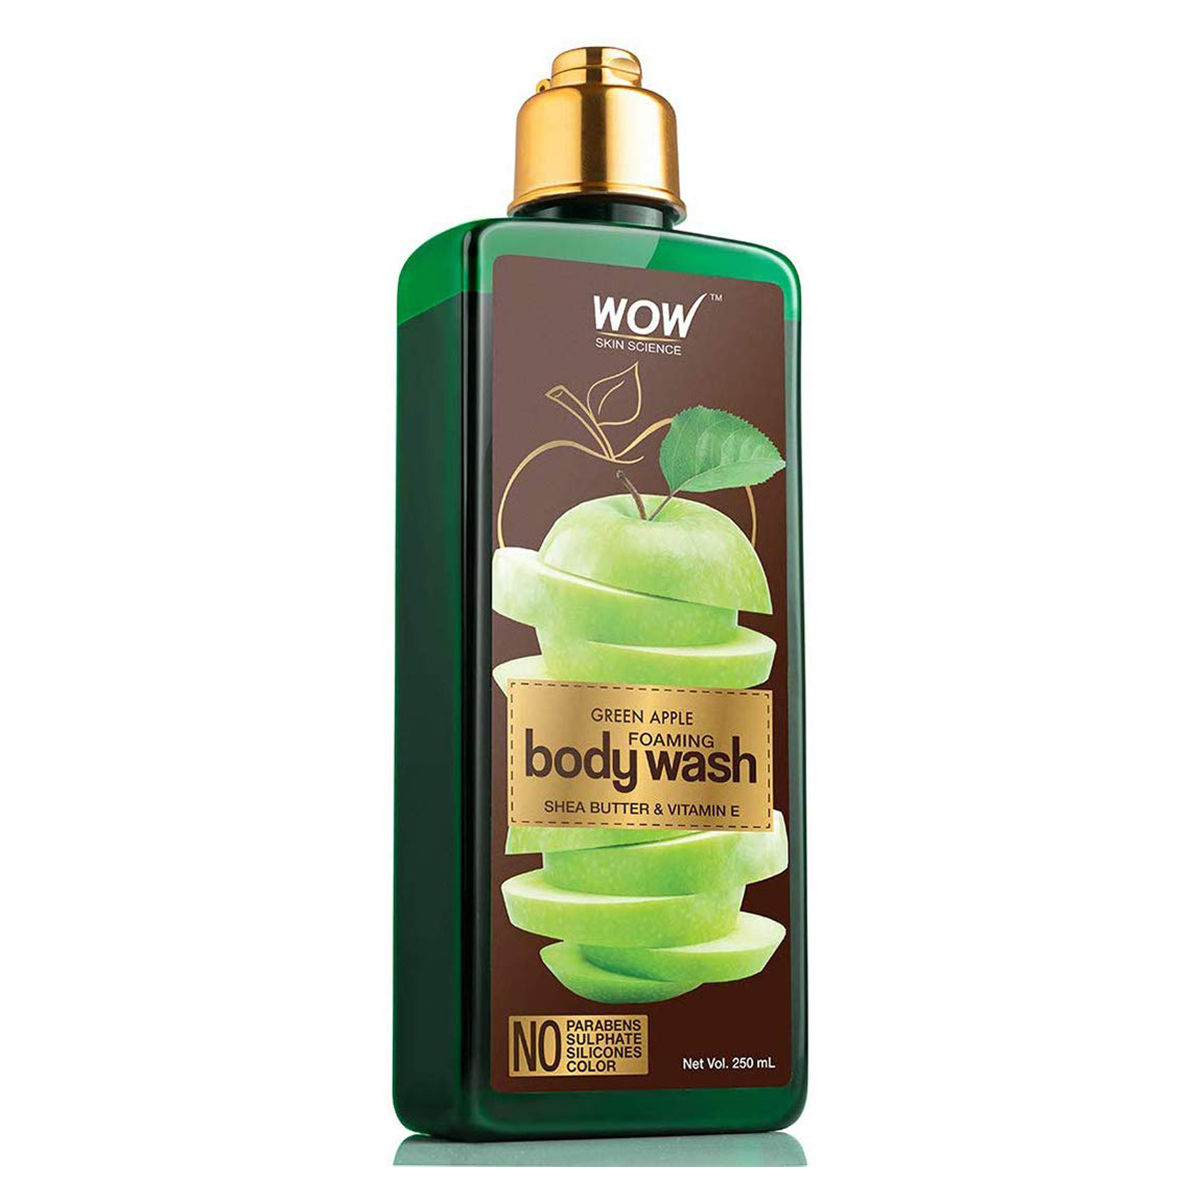 Buy WOW Skin Science Green Apple Foaming Body Wash, 250 ml Online